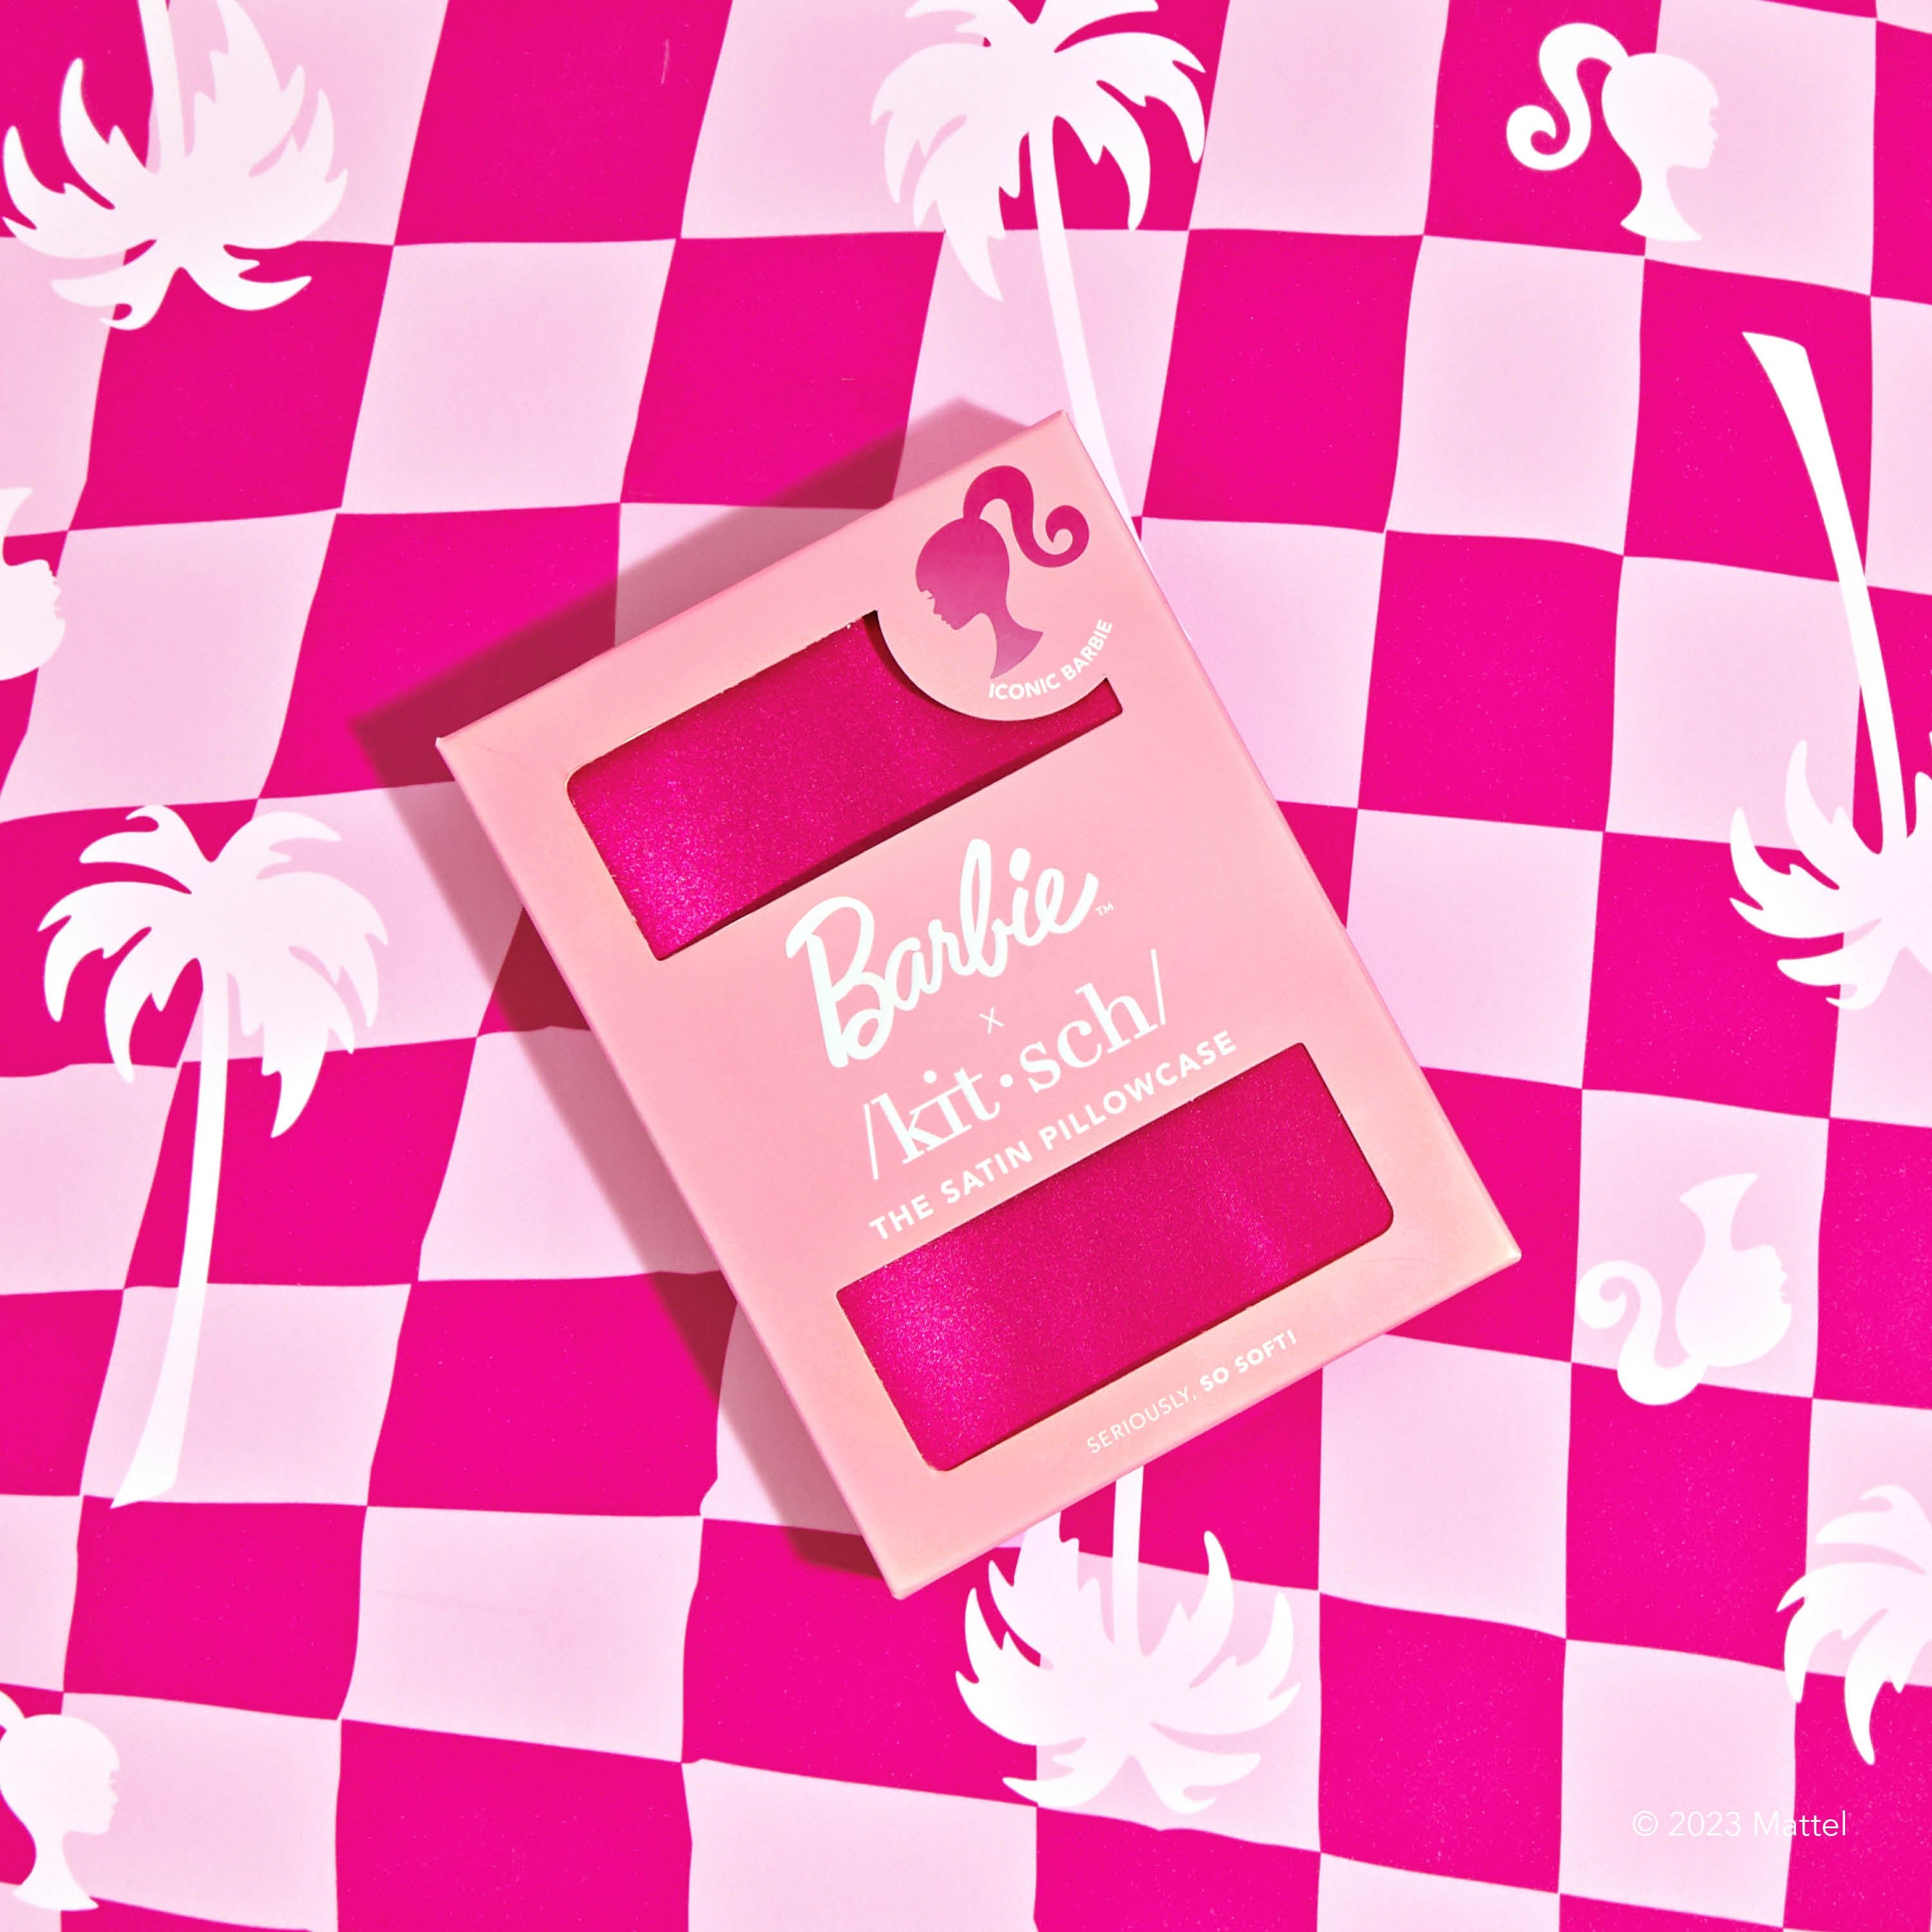 Barbie x Kitsch King Kopfkissenbezug - Iconic Barbie